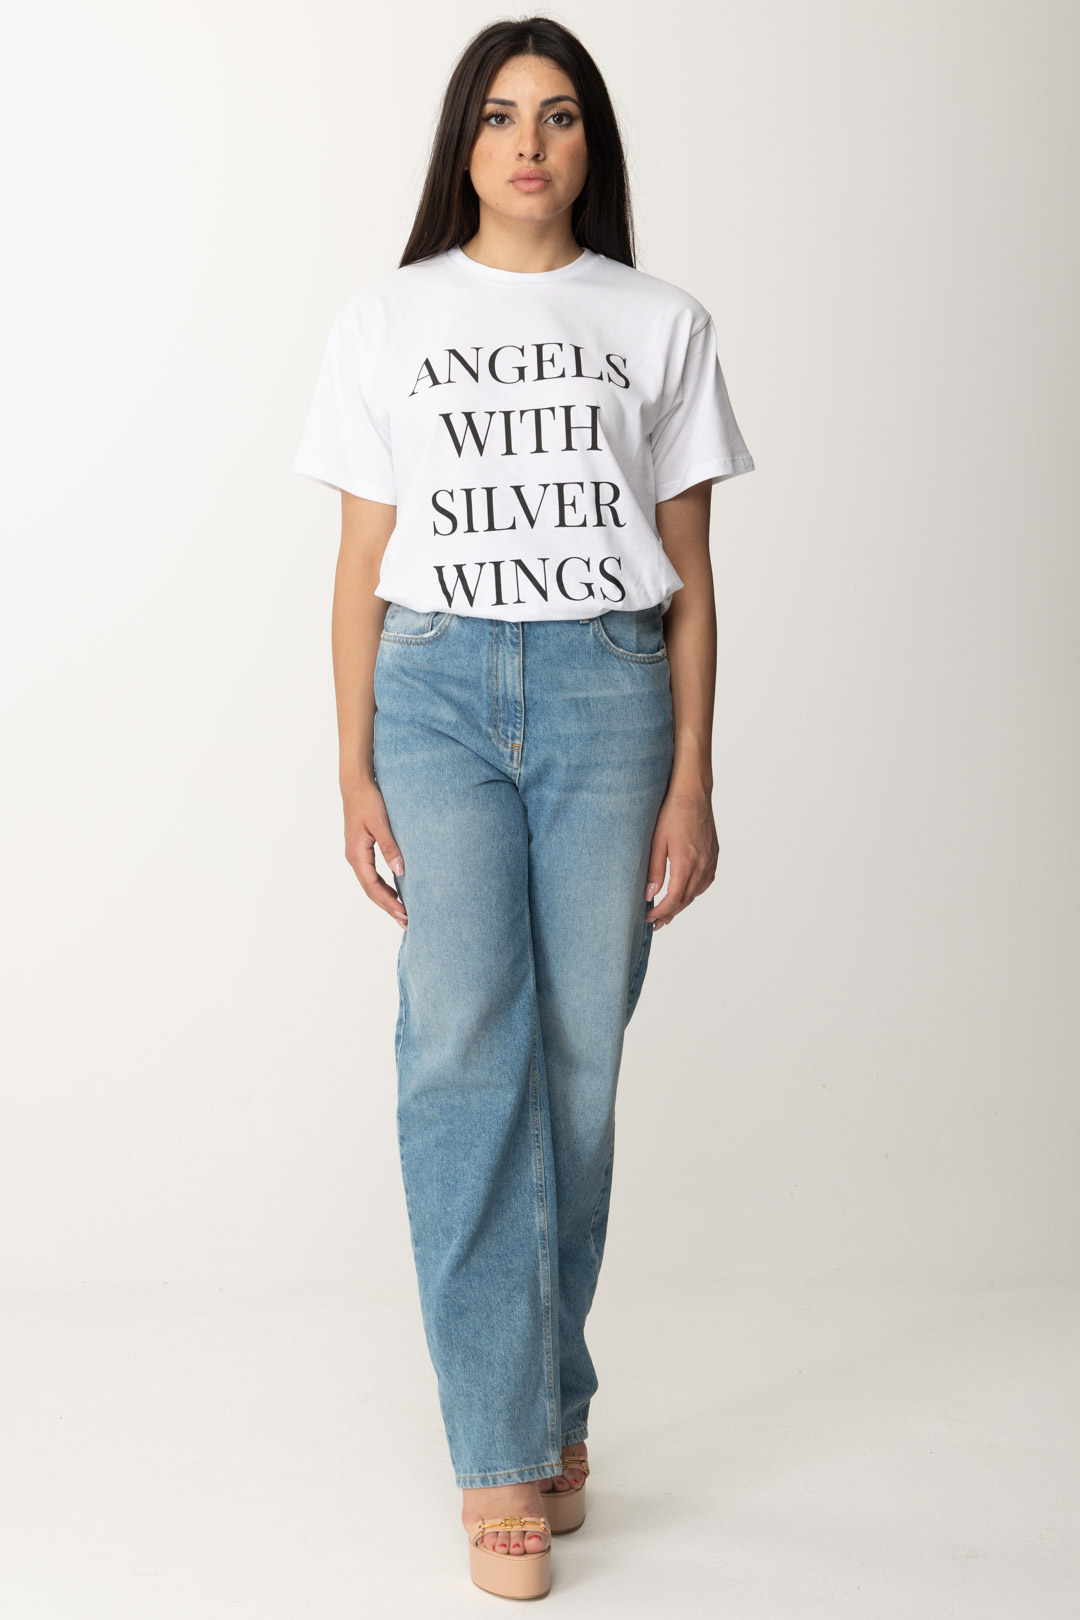 Aperçu: Elisabetta Franchi T-shirt avec écriture imprimée Gesso